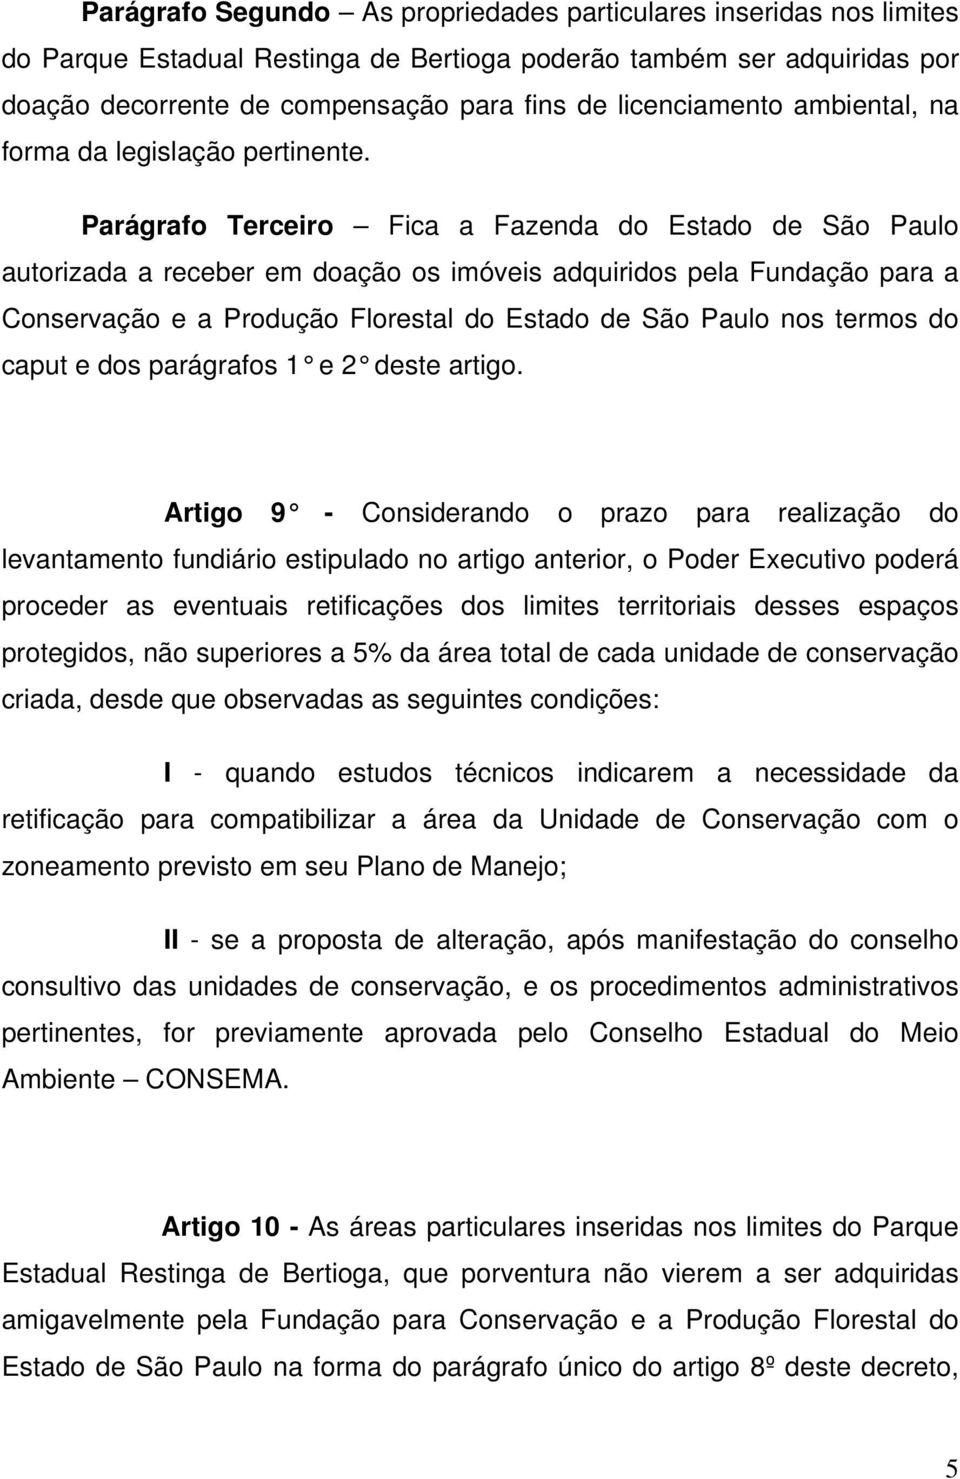 Parágrafo Terceiro Fica a Fazenda do Estado de São Paulo autorizada a receber em doação os imóveis adquiridos pela Fundação para a Conservação e a Produção Florestal do Estado de São Paulo nos termos